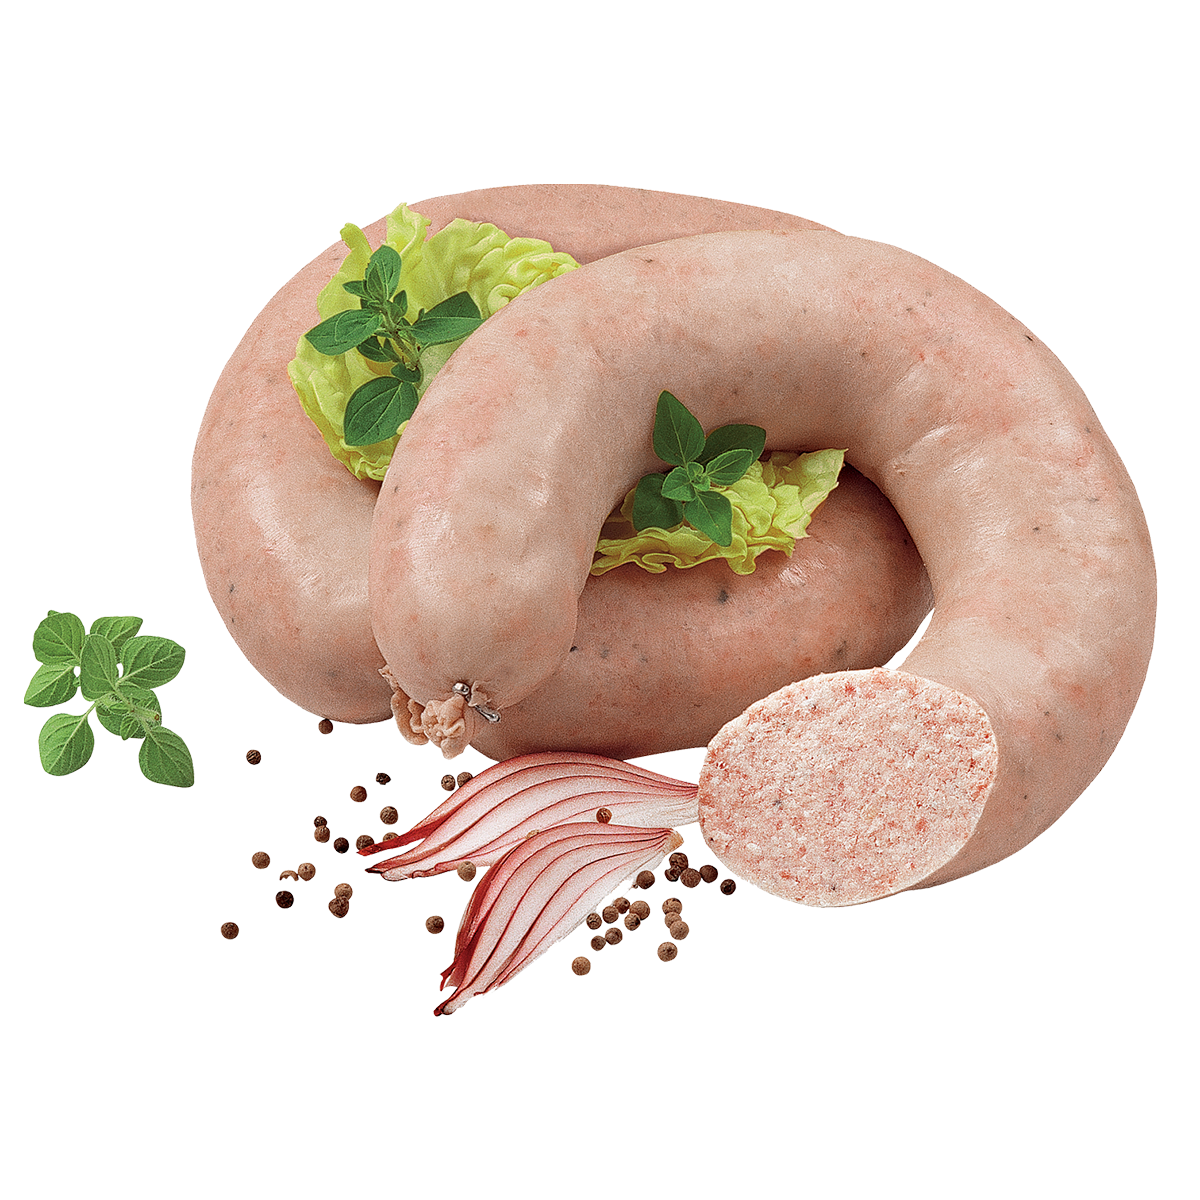 Hannoversche Zwiebelwurst BD – Pikante Streichwurst-Spezialität aus bestem Schweinefleisch, mit vielen frischen Zwiebeln und Muskat verfeinert – frisch erhältlich an der Bedienungstheke.